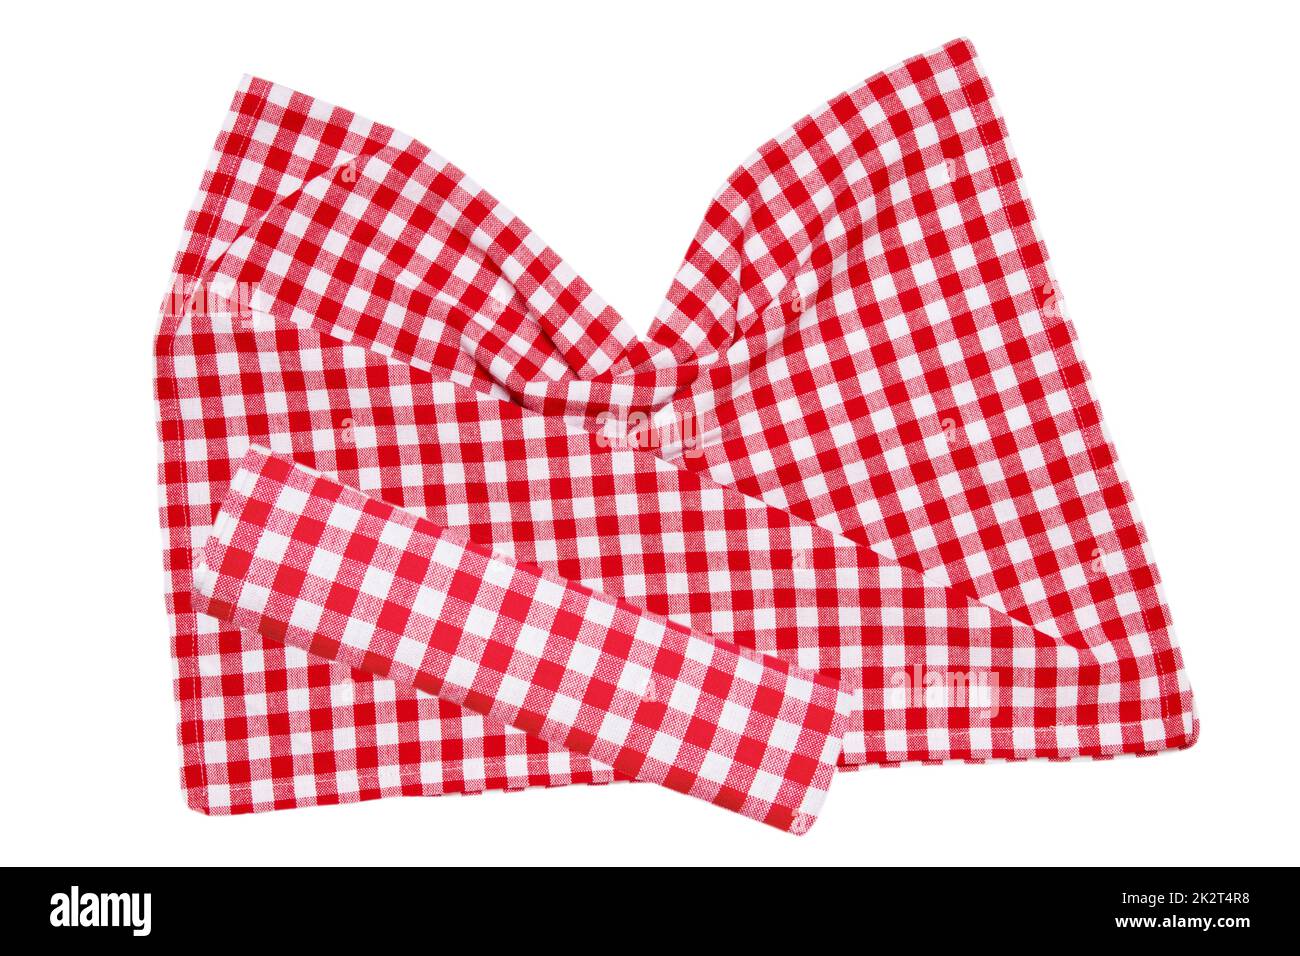 Rote Picknickdecke. Nahaufnahme einer roten karierten Serviette oder Tischdecke, isoliert auf weißem Hintergrund. Schöner Hintergrund für die Produktplatzierung oder -Montage. Stockfoto